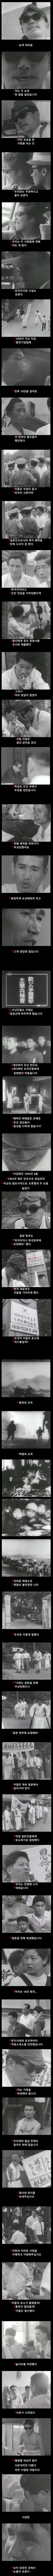 日本軍に徴集された朝鮮人